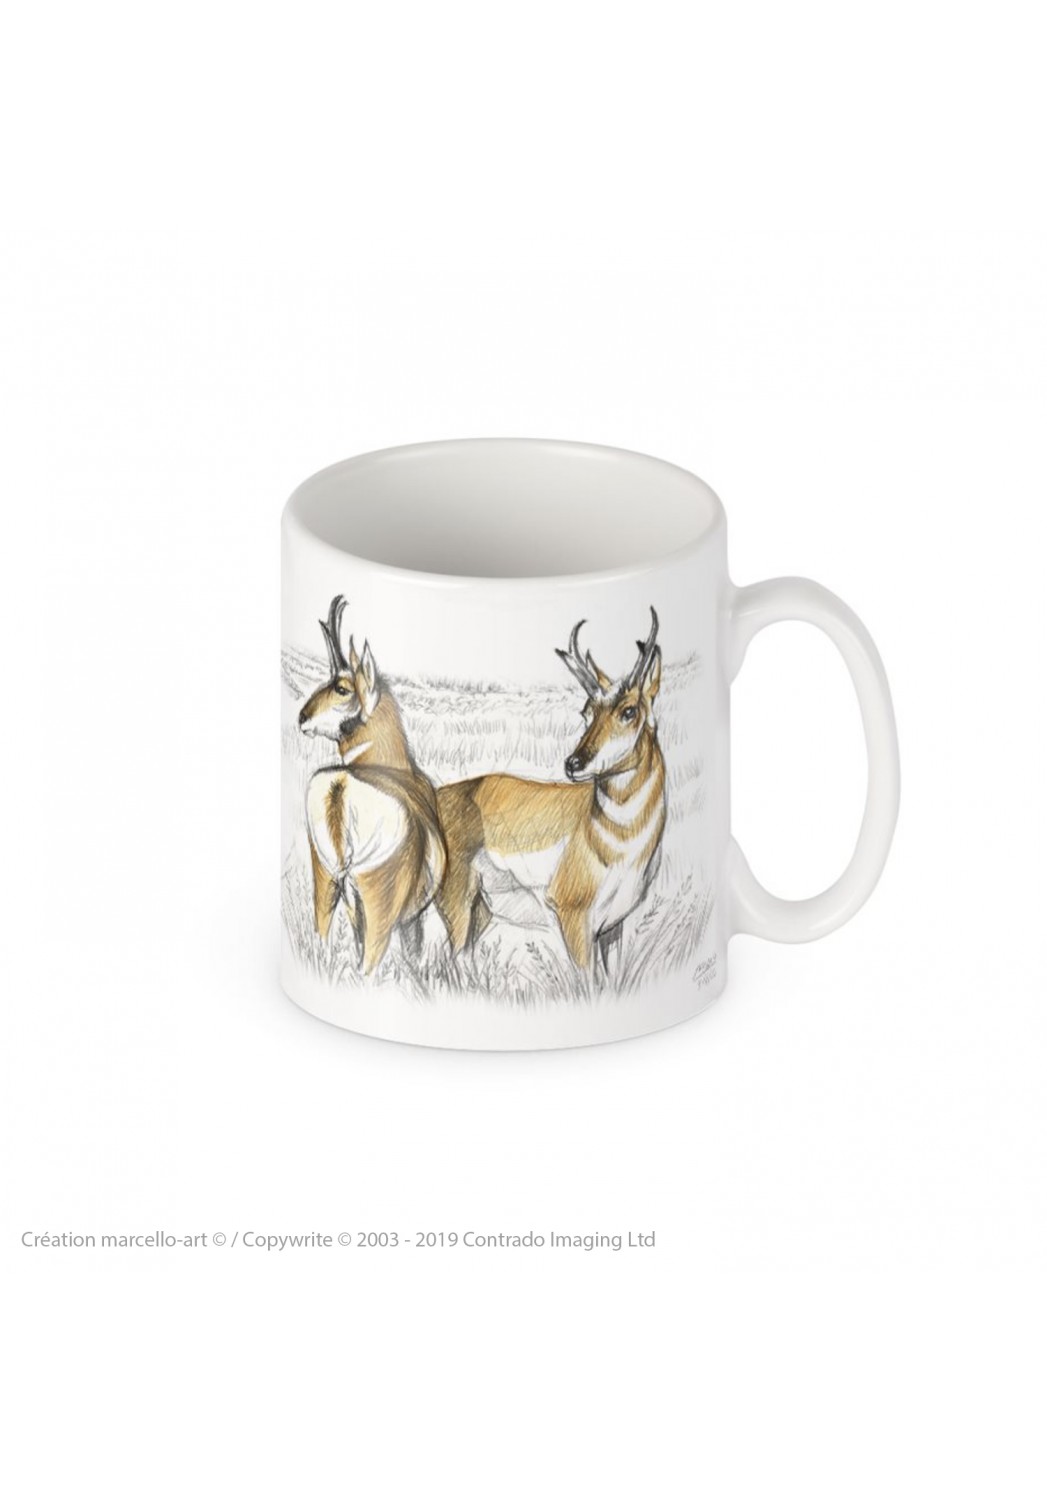 Marcello-art: Decoration accessoiries Porcelain mug 393 pronghorne